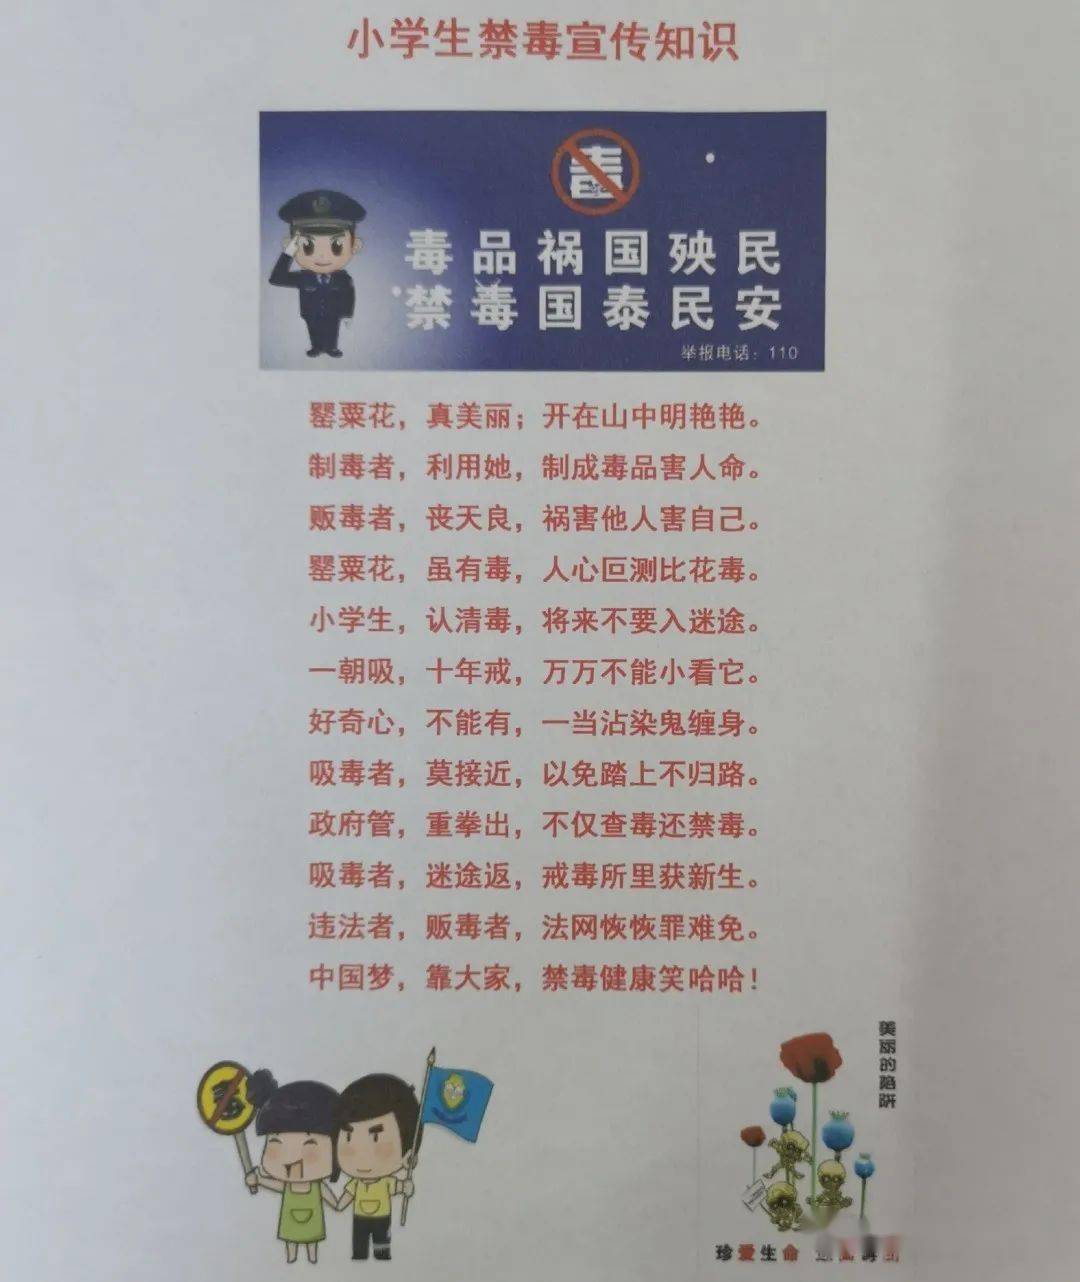 春节禁毒宣传标语图片